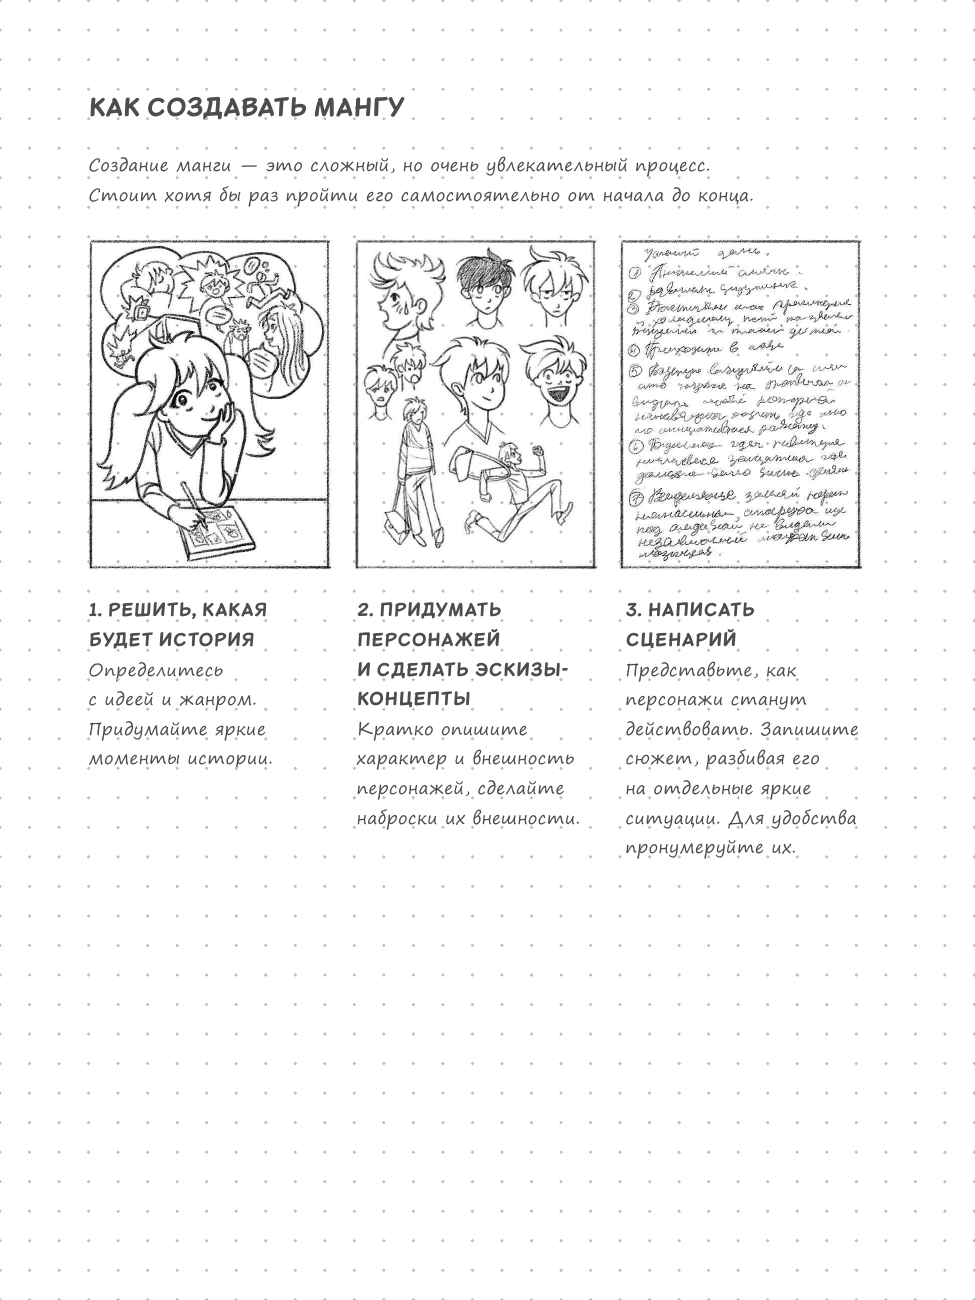 Sketchbook. Рисуем мангу и аниме - фото №10